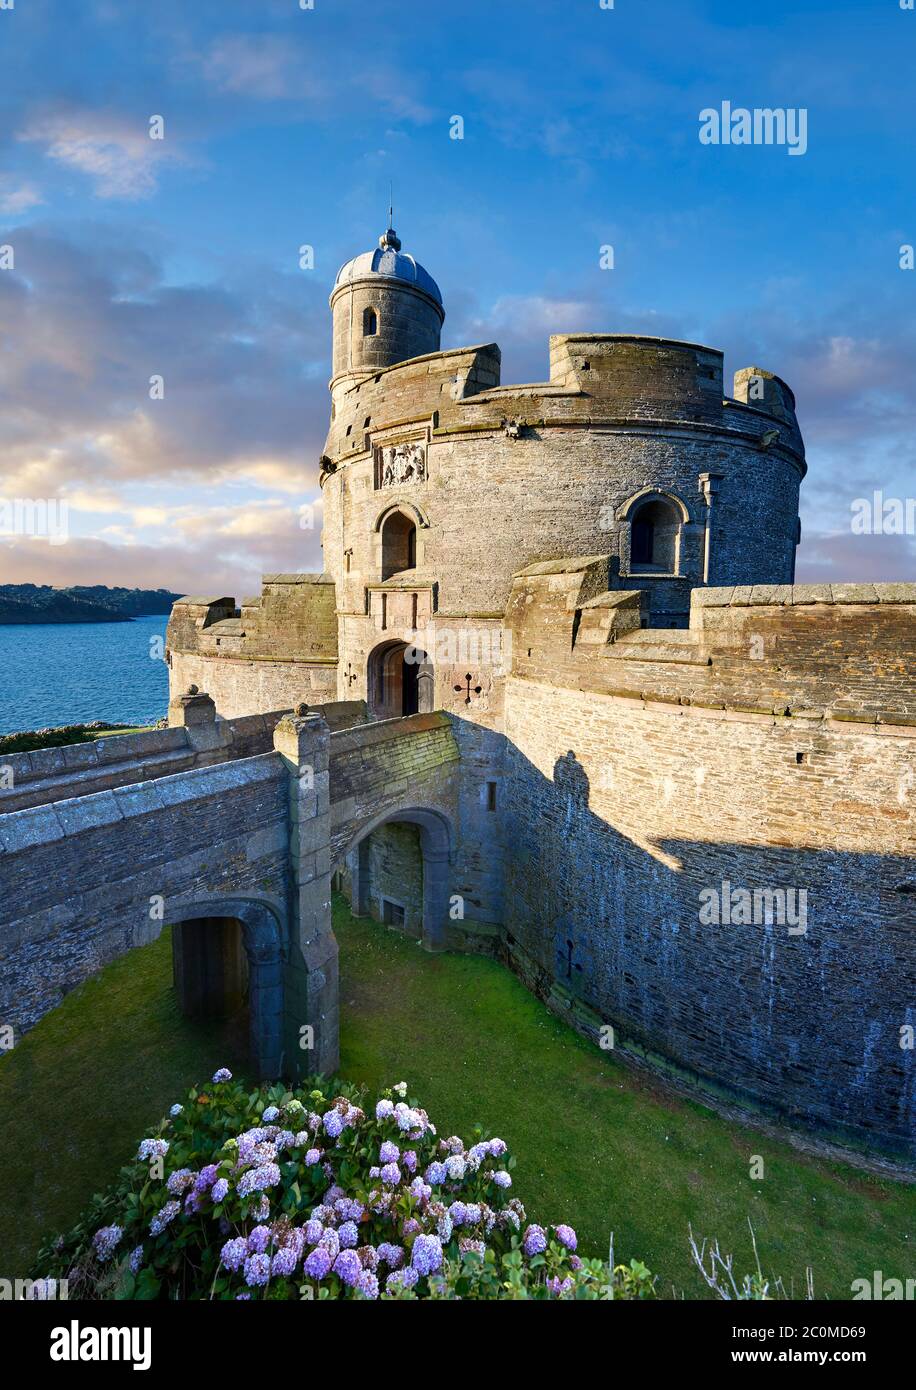 St Mawes Castel difensivo costiero Tudor fortezze (1540) costruita per il re Enrico VIII, Colchester, Inghilterra Foto Stock